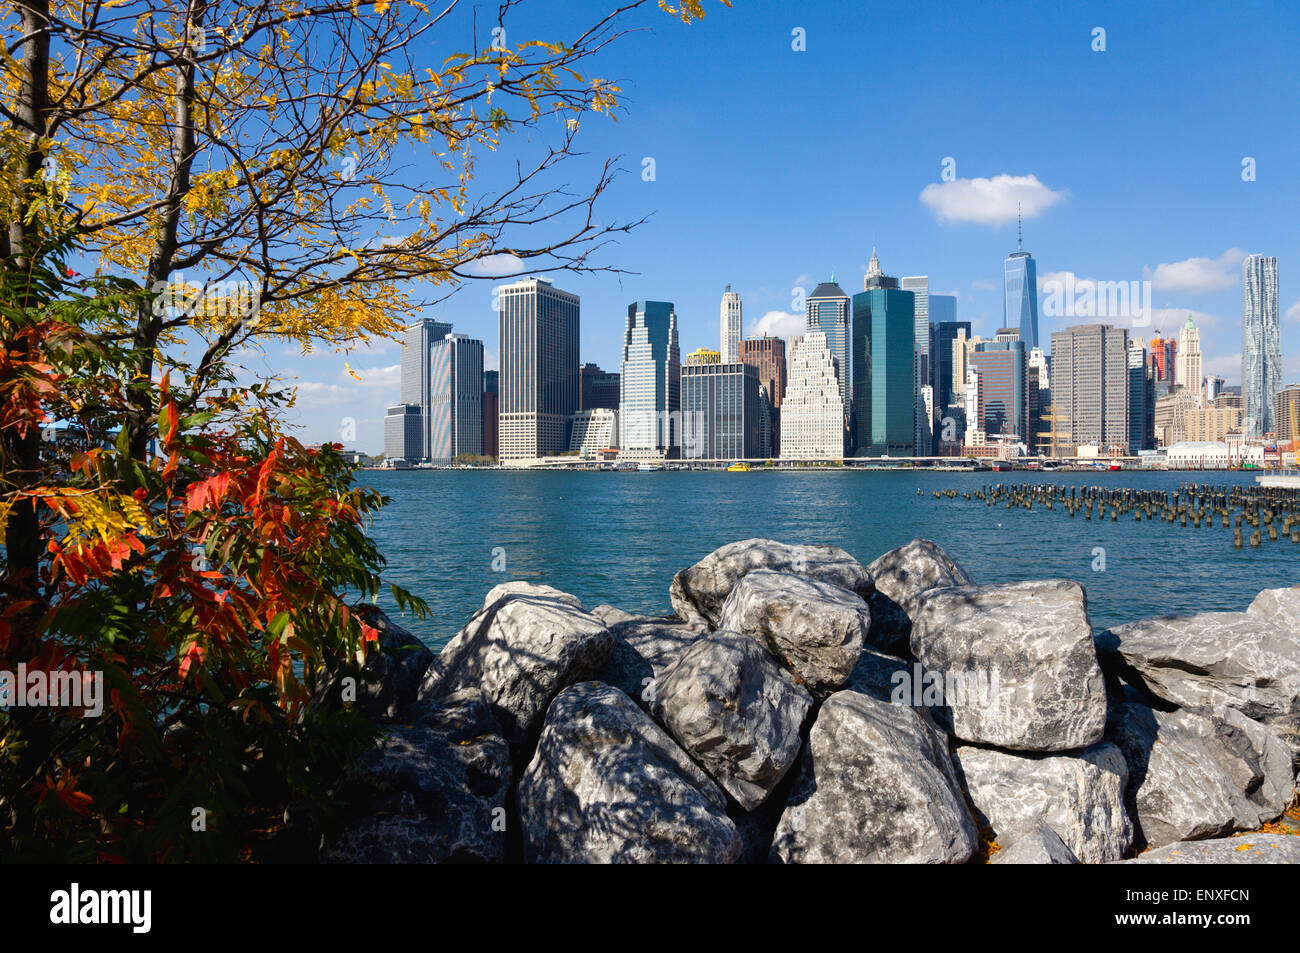 Stati Uniti d'America, nello Stato di New York, New York, NYC, Lower Manhattan financial district skyline e East River visto in autunno dal ponte di Brooklyn Park. Foto Stock